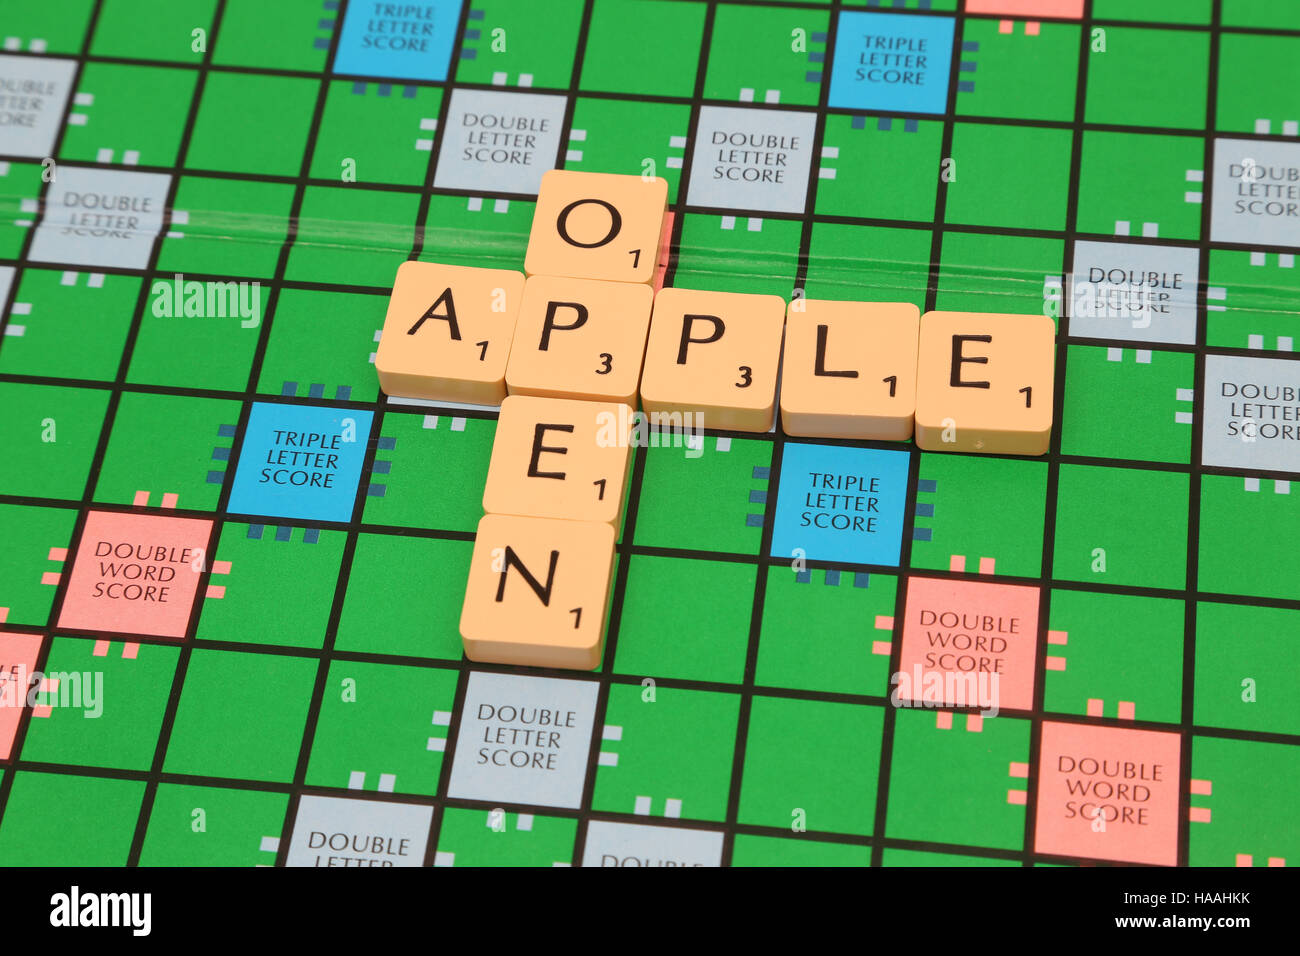 Jeu de société Scrabble Tiles à bord 'Apple' ouvert Banque D'Images